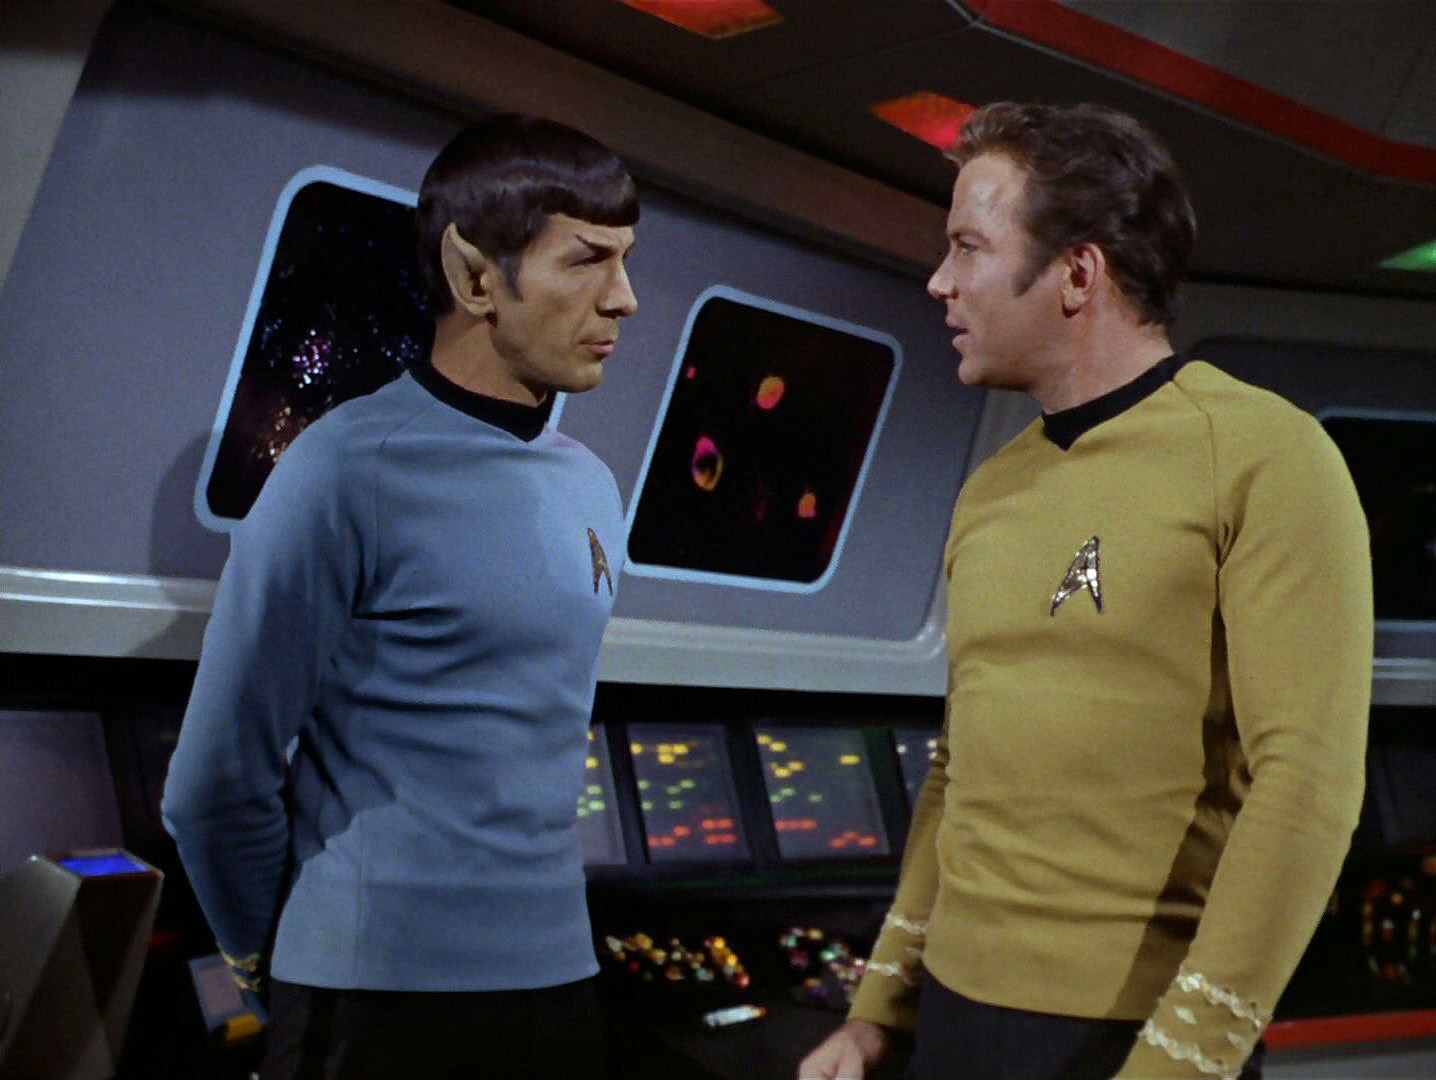 Spock and James Kirk